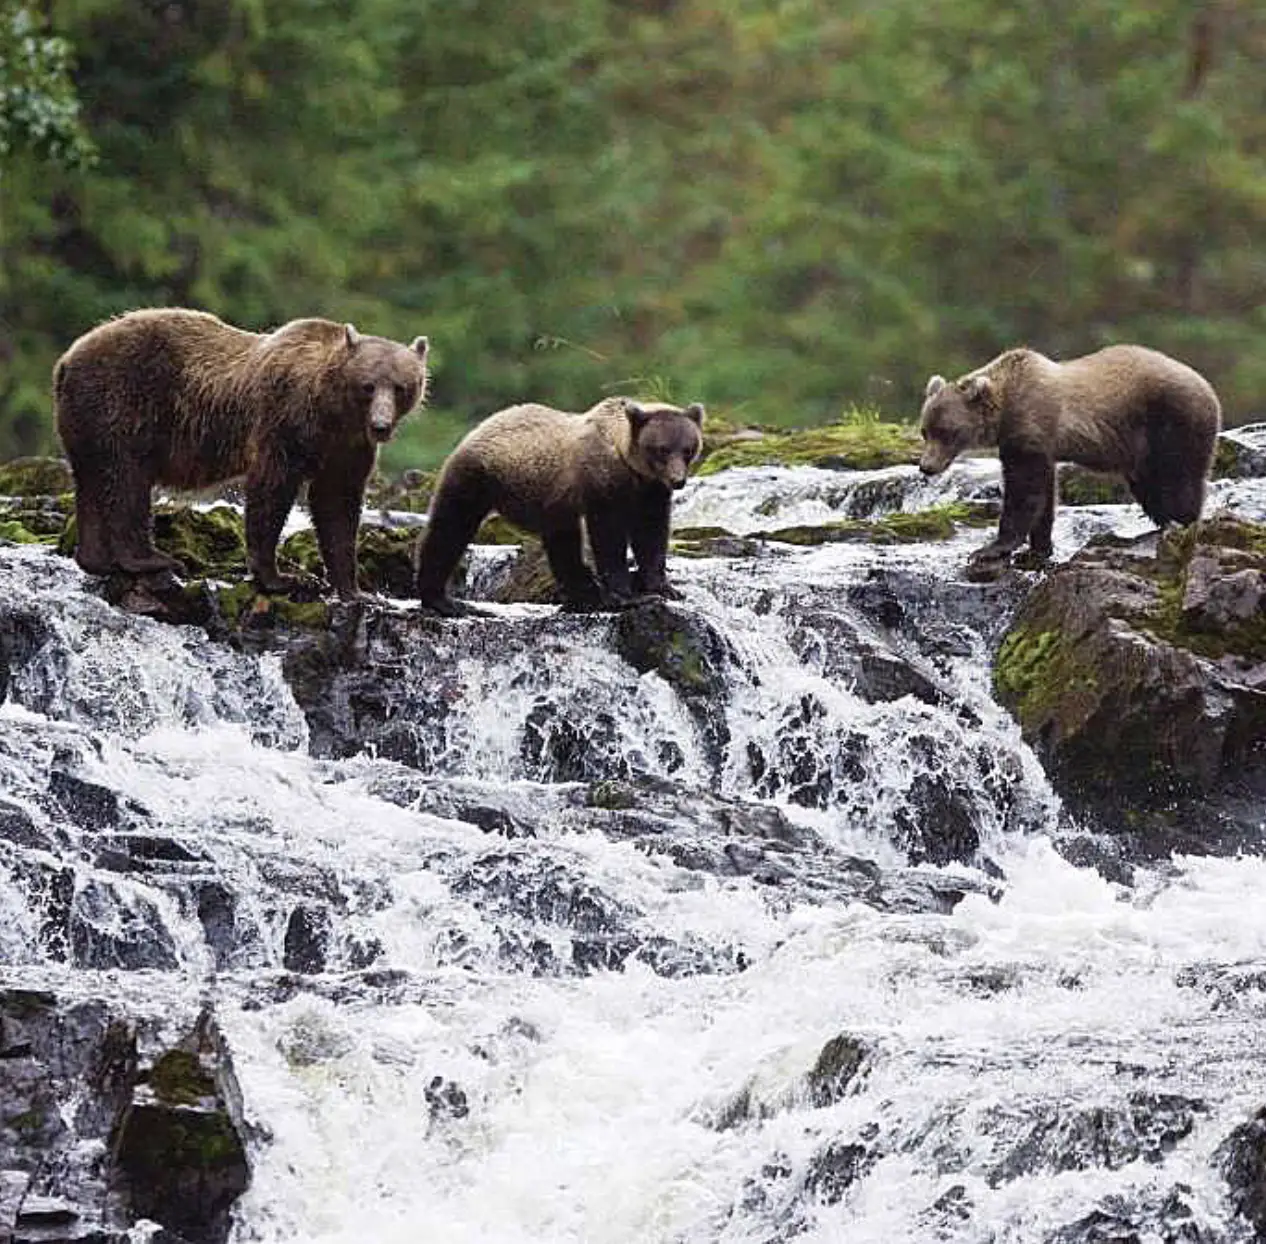 Three bears at a waterfall